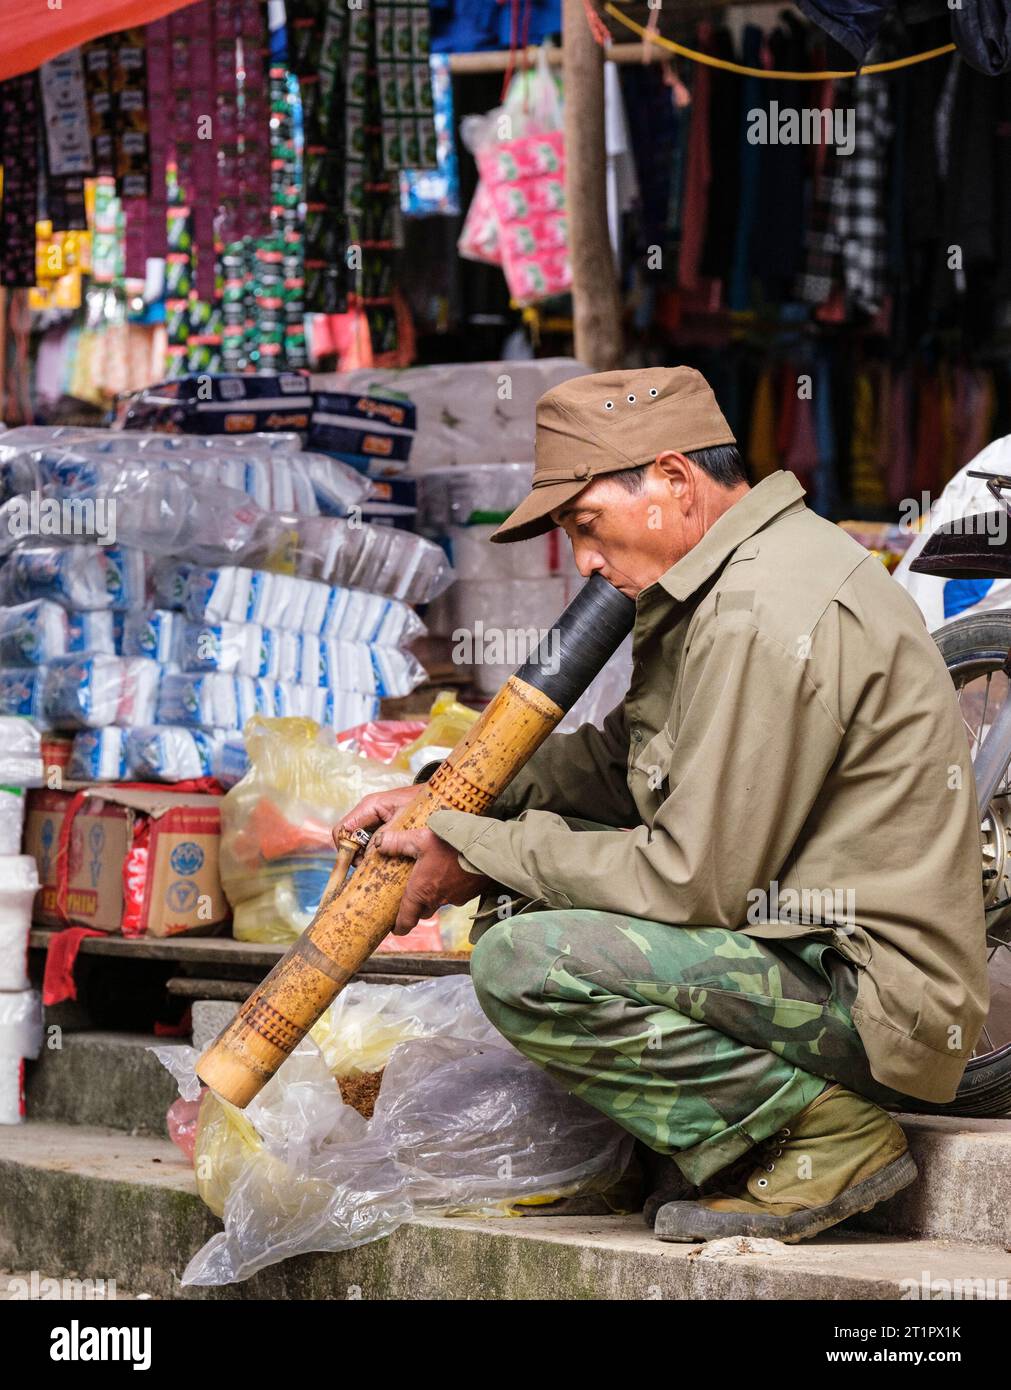 Scène du marché de CAN Cau, Vietnam. Hmong Homme fumant une pipe en bambou. Province de Lao Cai. Banque D'Images